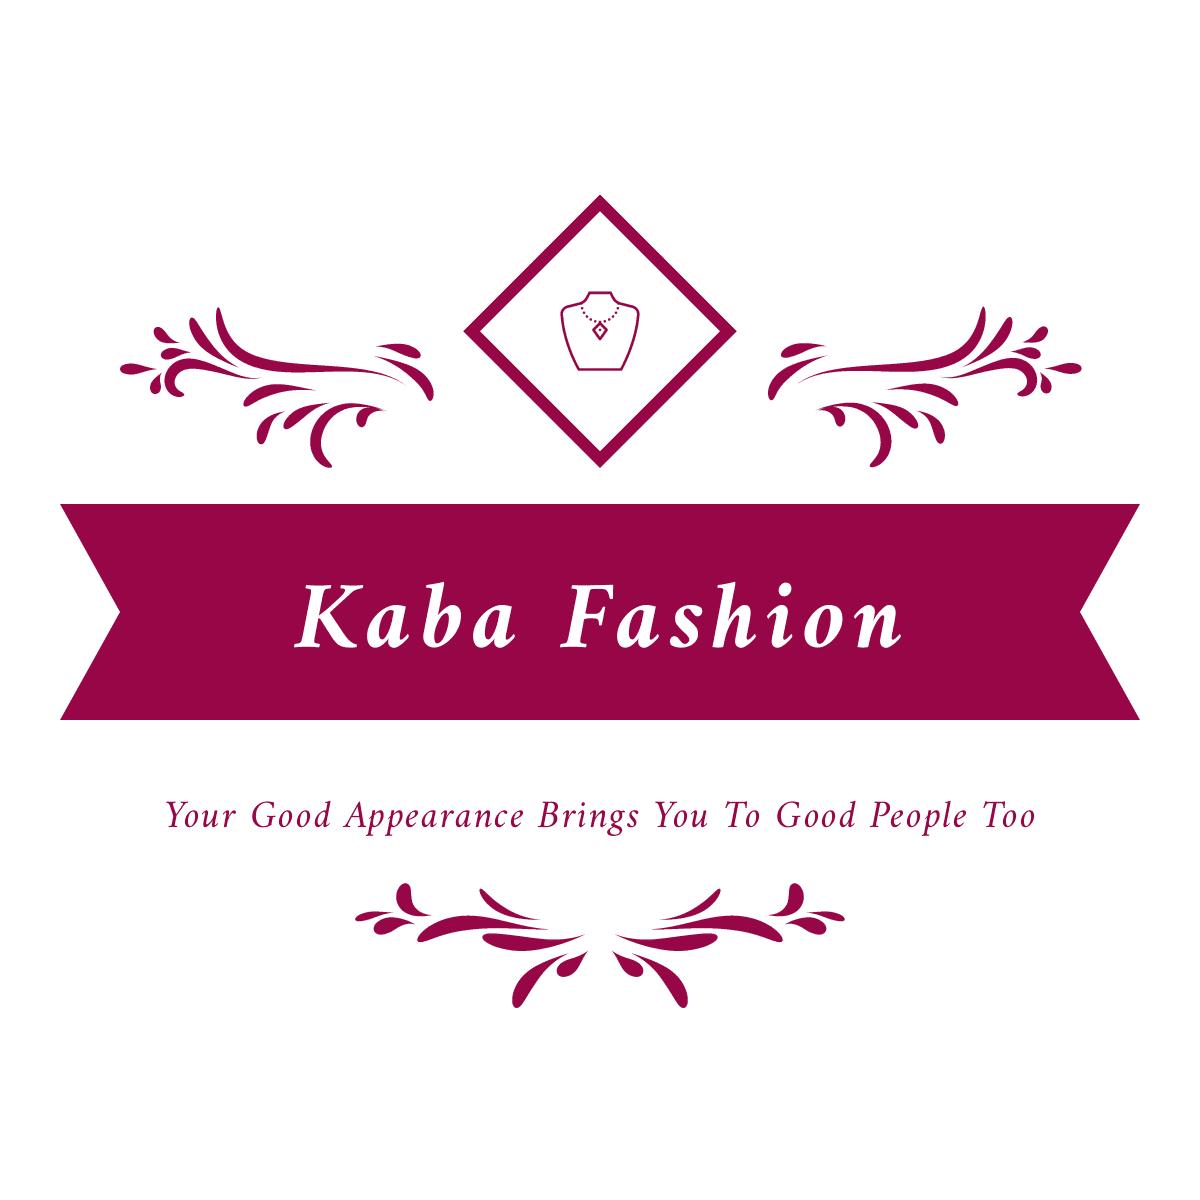 Kaba Fashion 's images